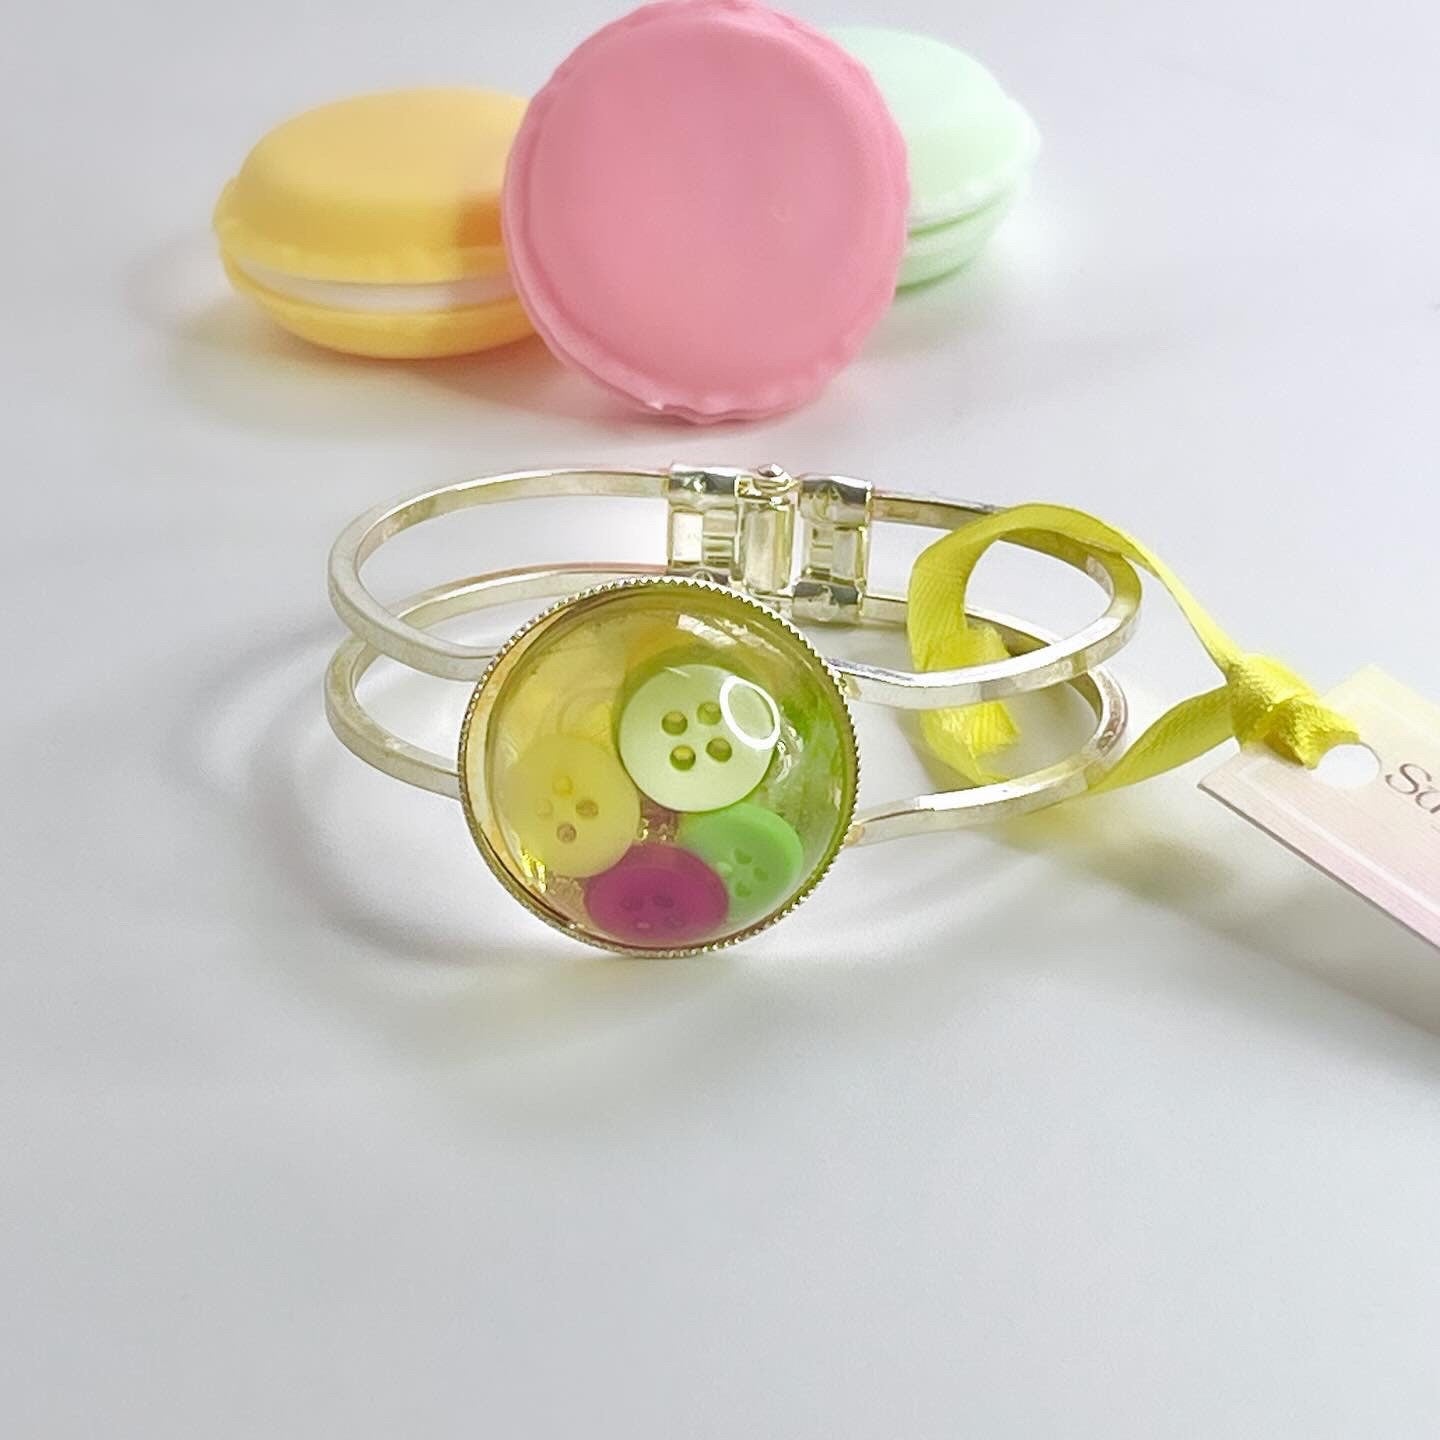 Handmade Colourful Button Bracelet for Women